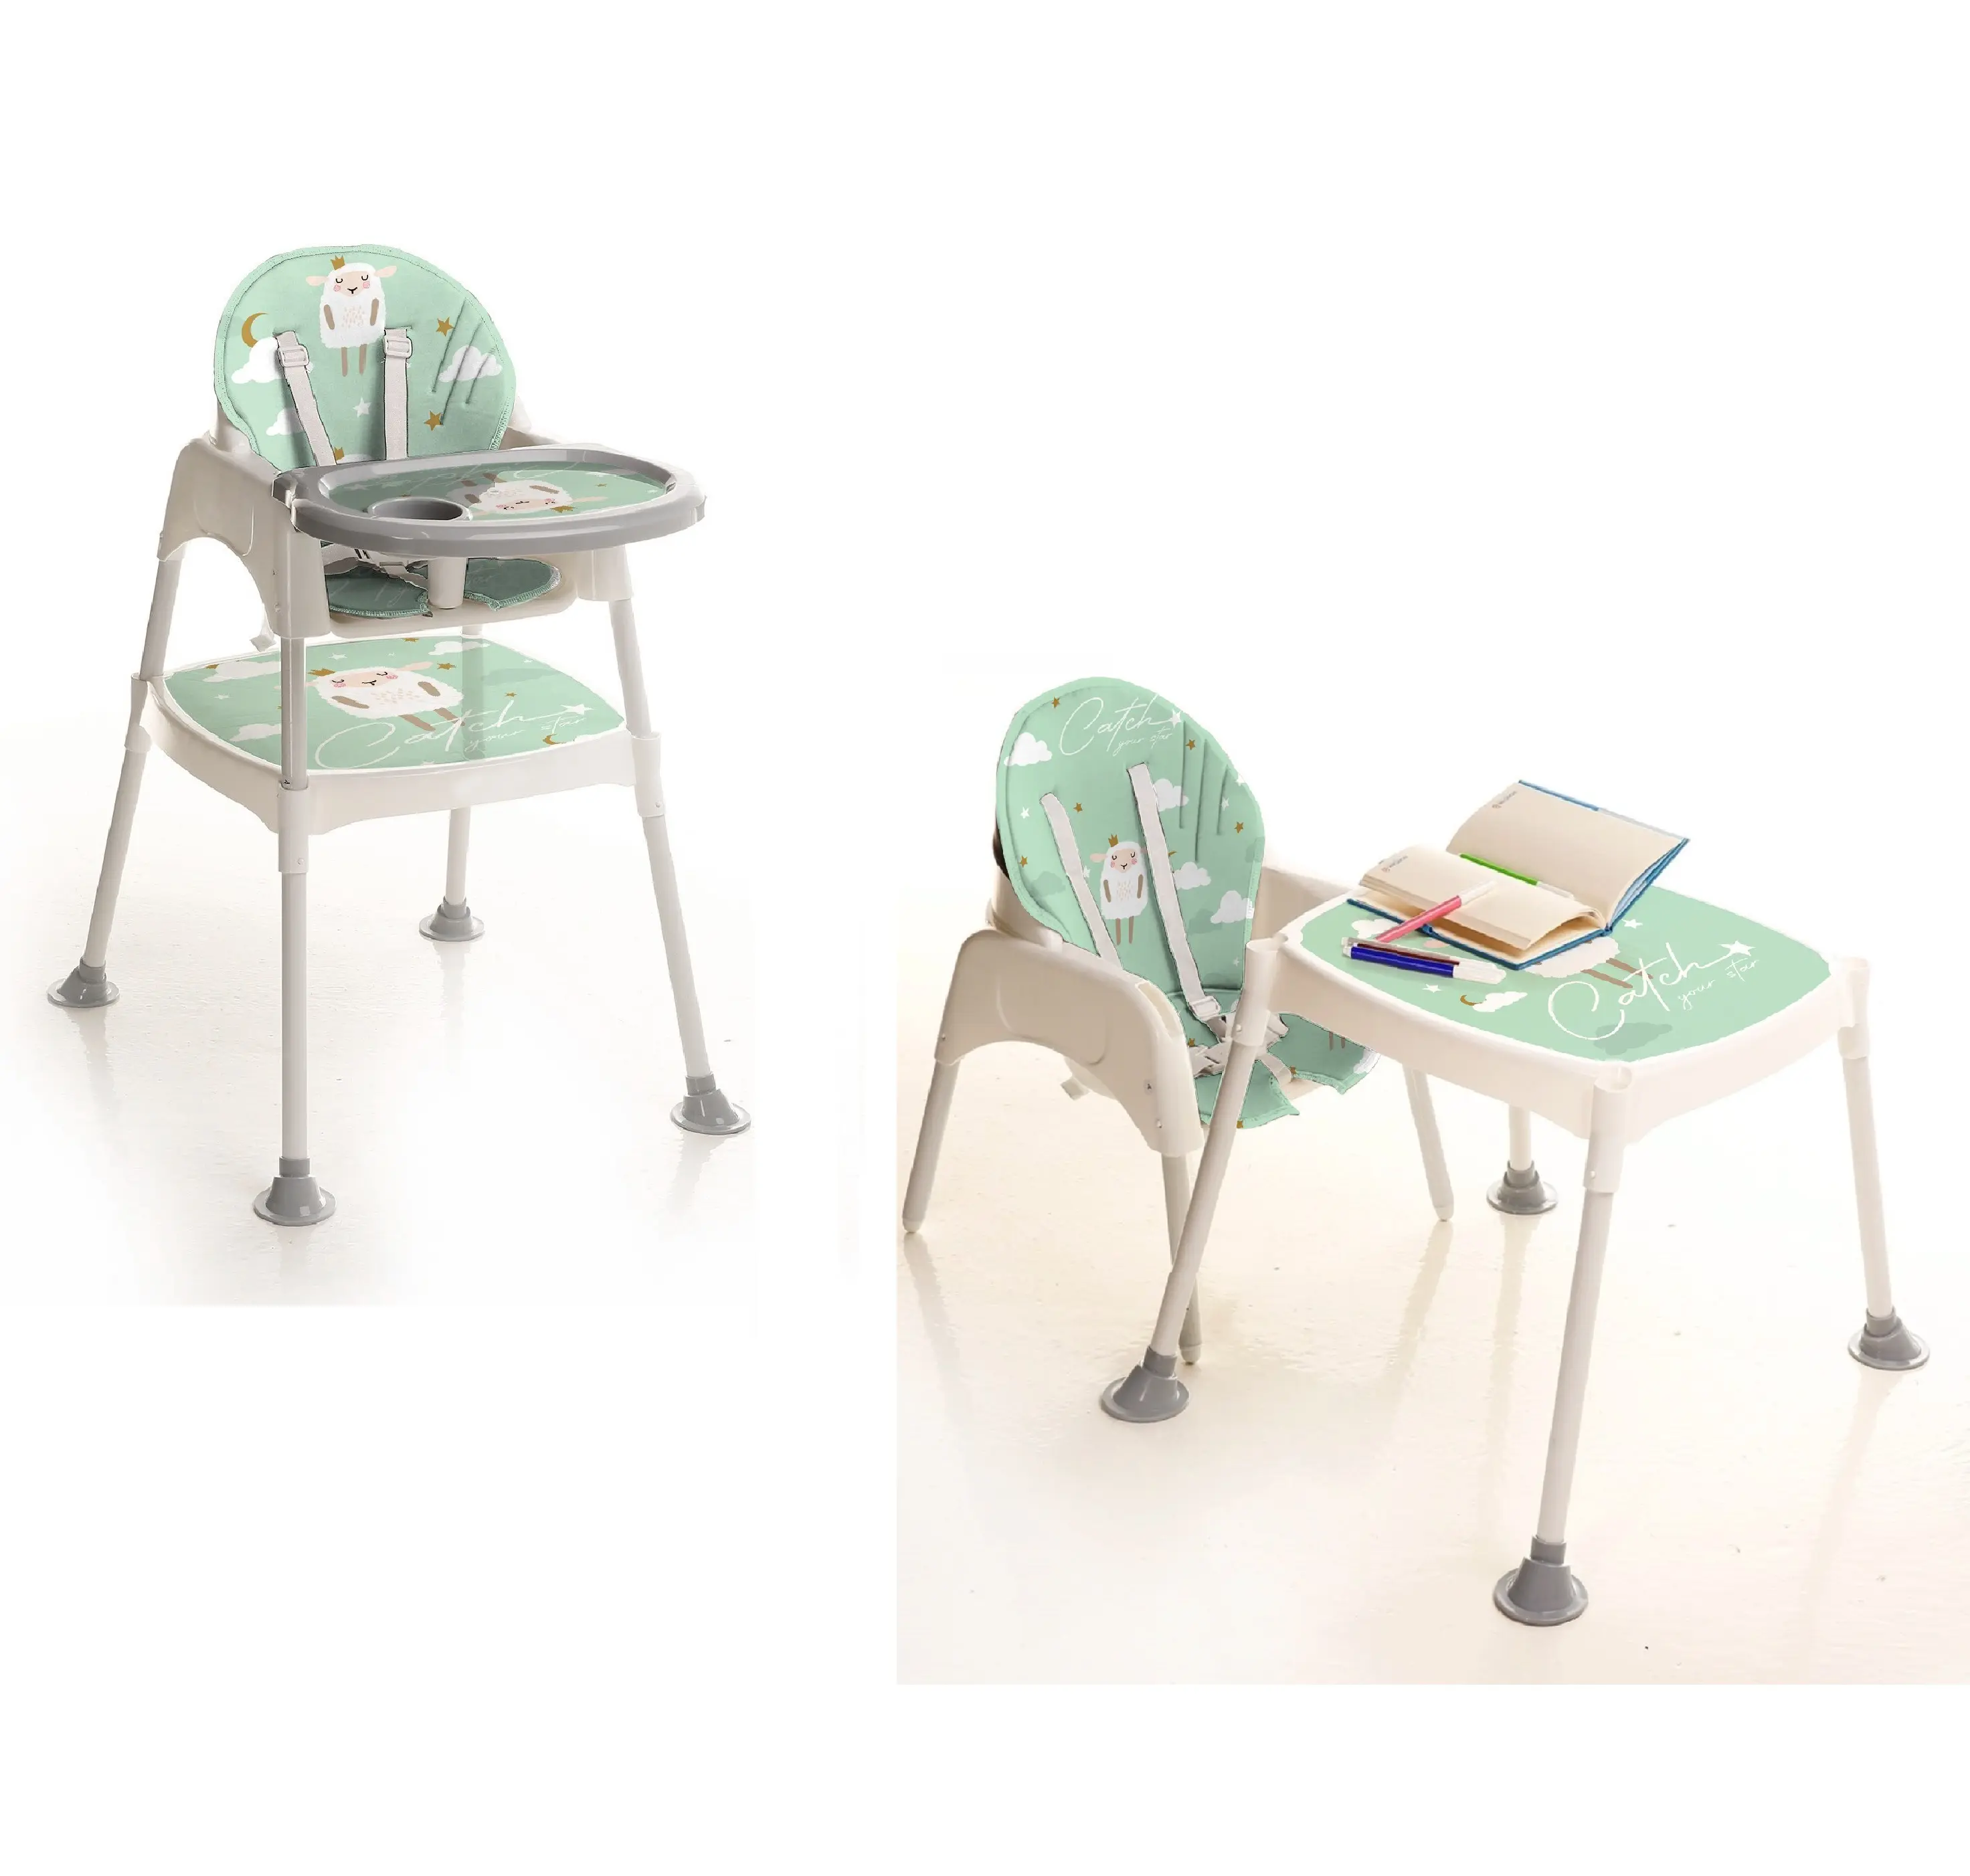 Miglior prezzo di vendita calda del bambino di alta sedia del bambino di alimentazione ad alta sedia bambino tavolo e sedia made in Turchia